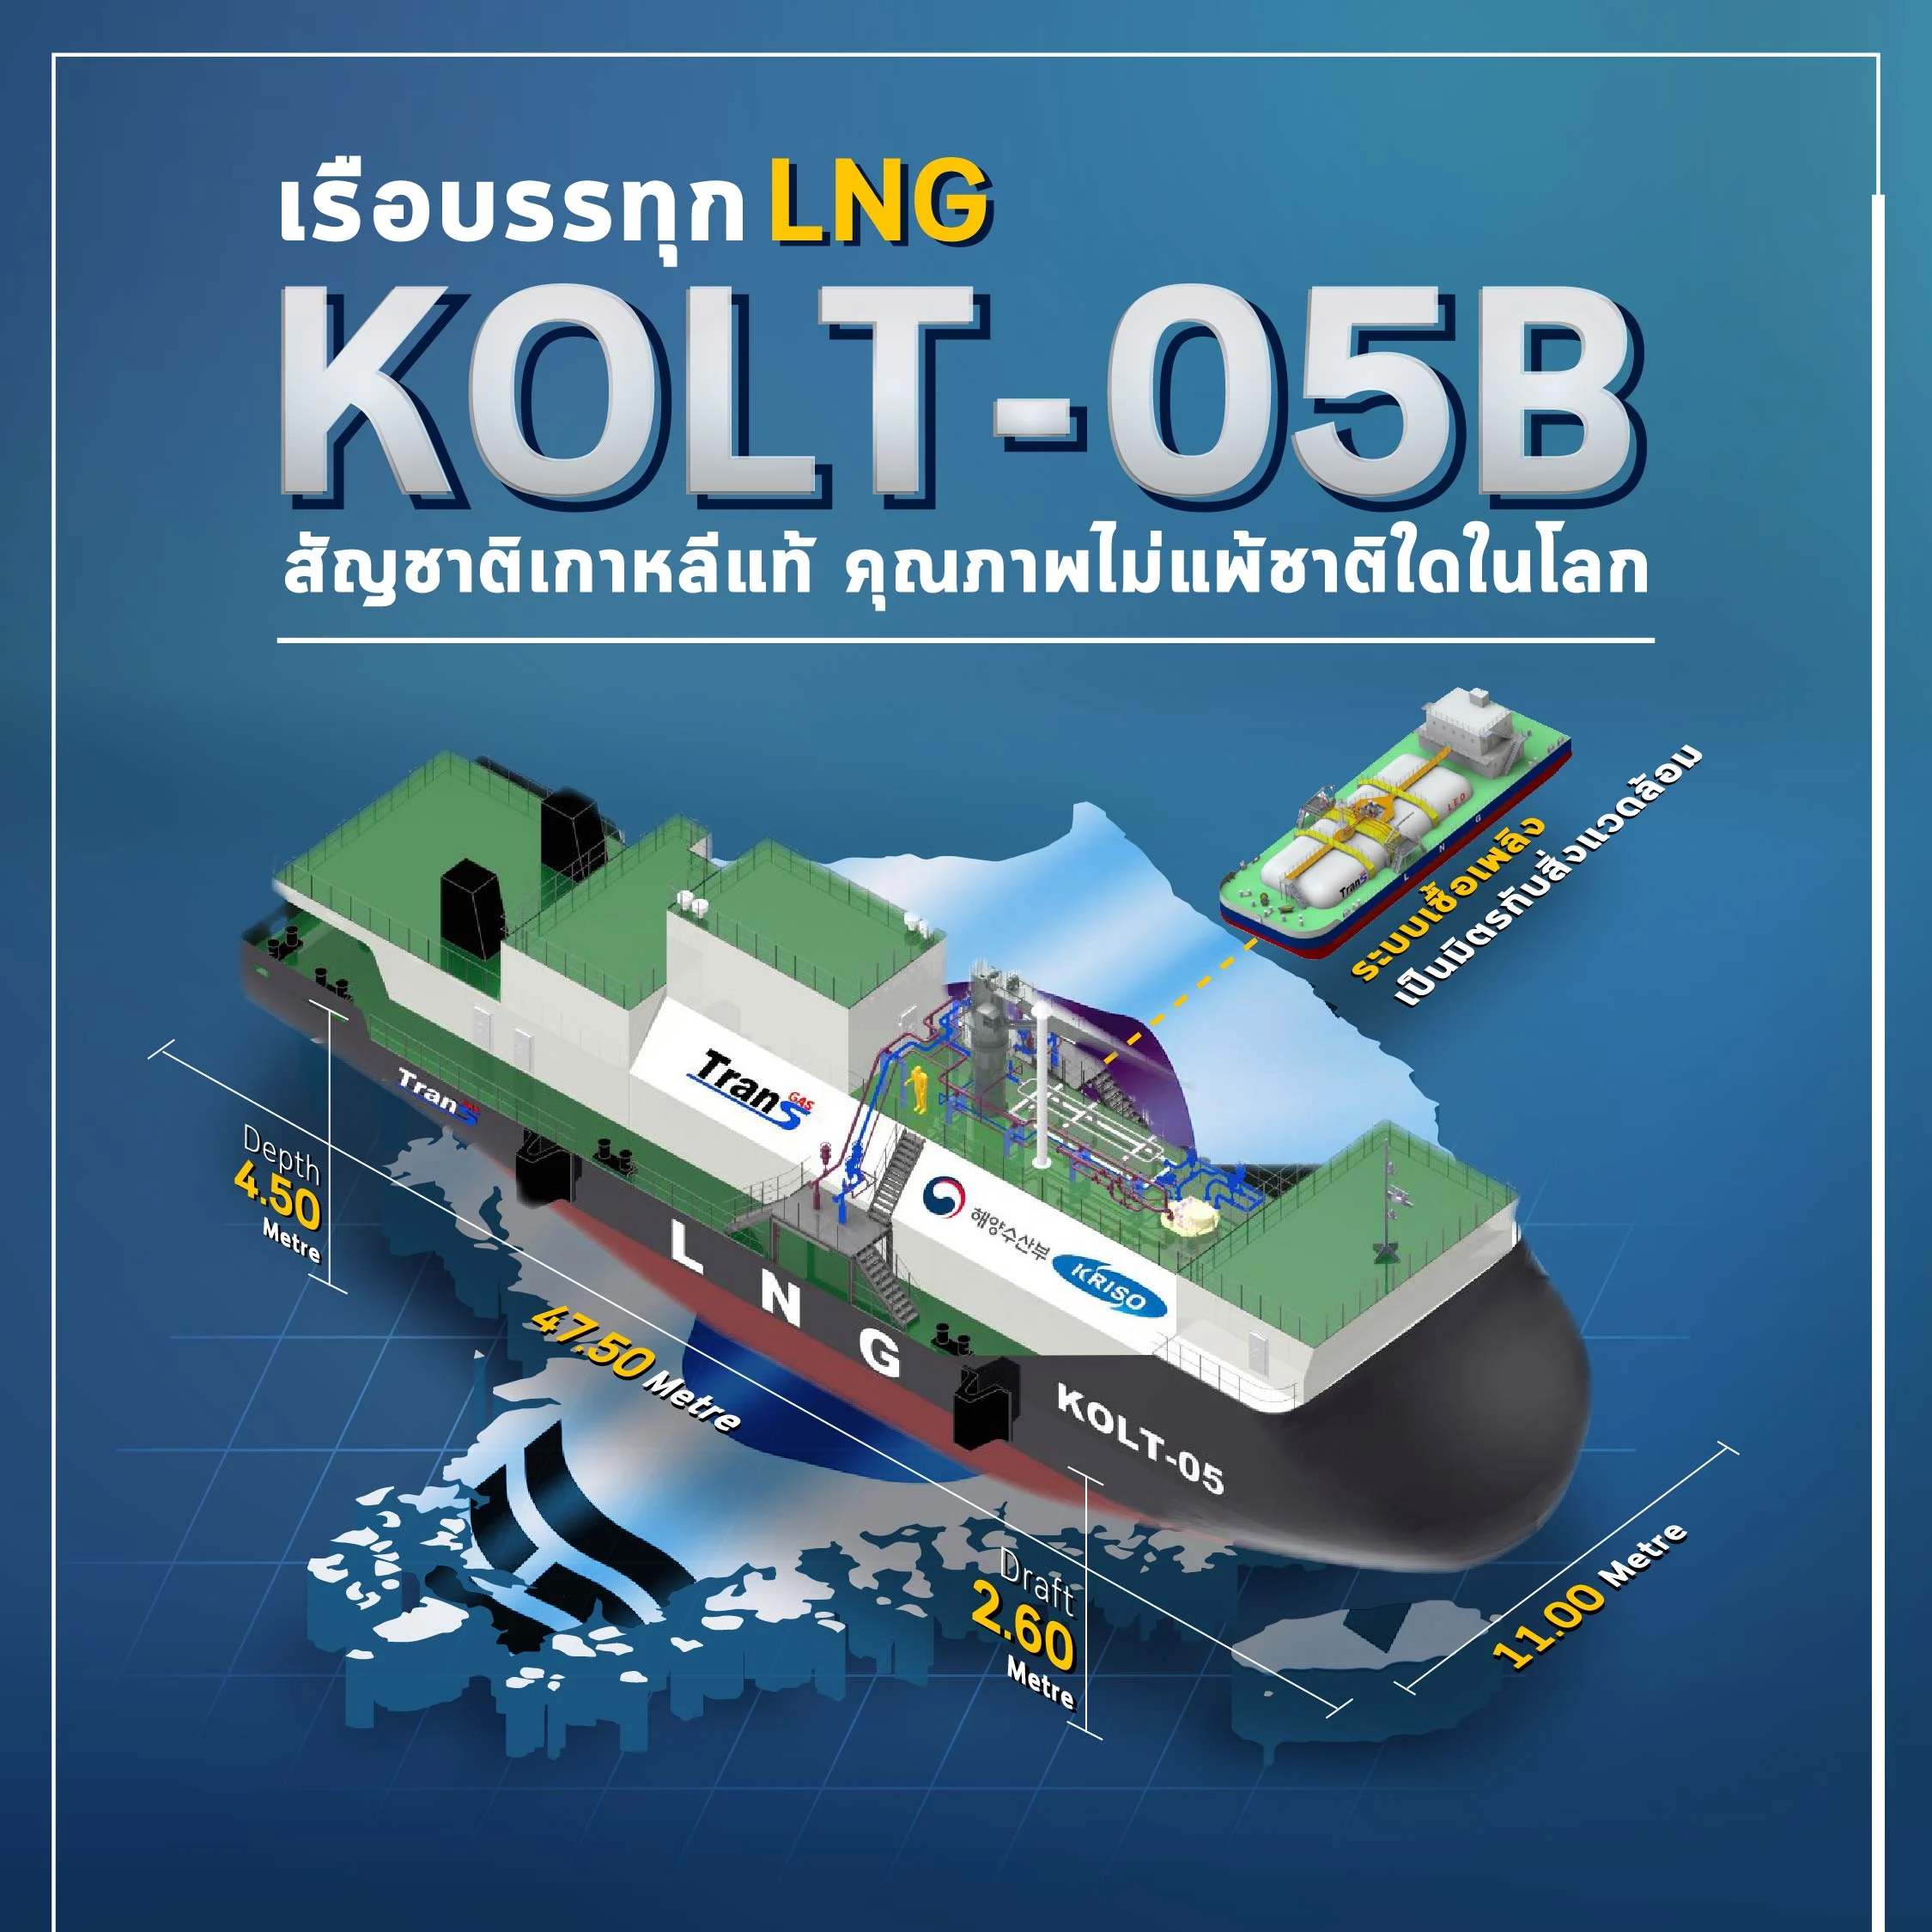 เกาหลีเดินหน้าต่อกับโครงการสร้างเรือ LNG